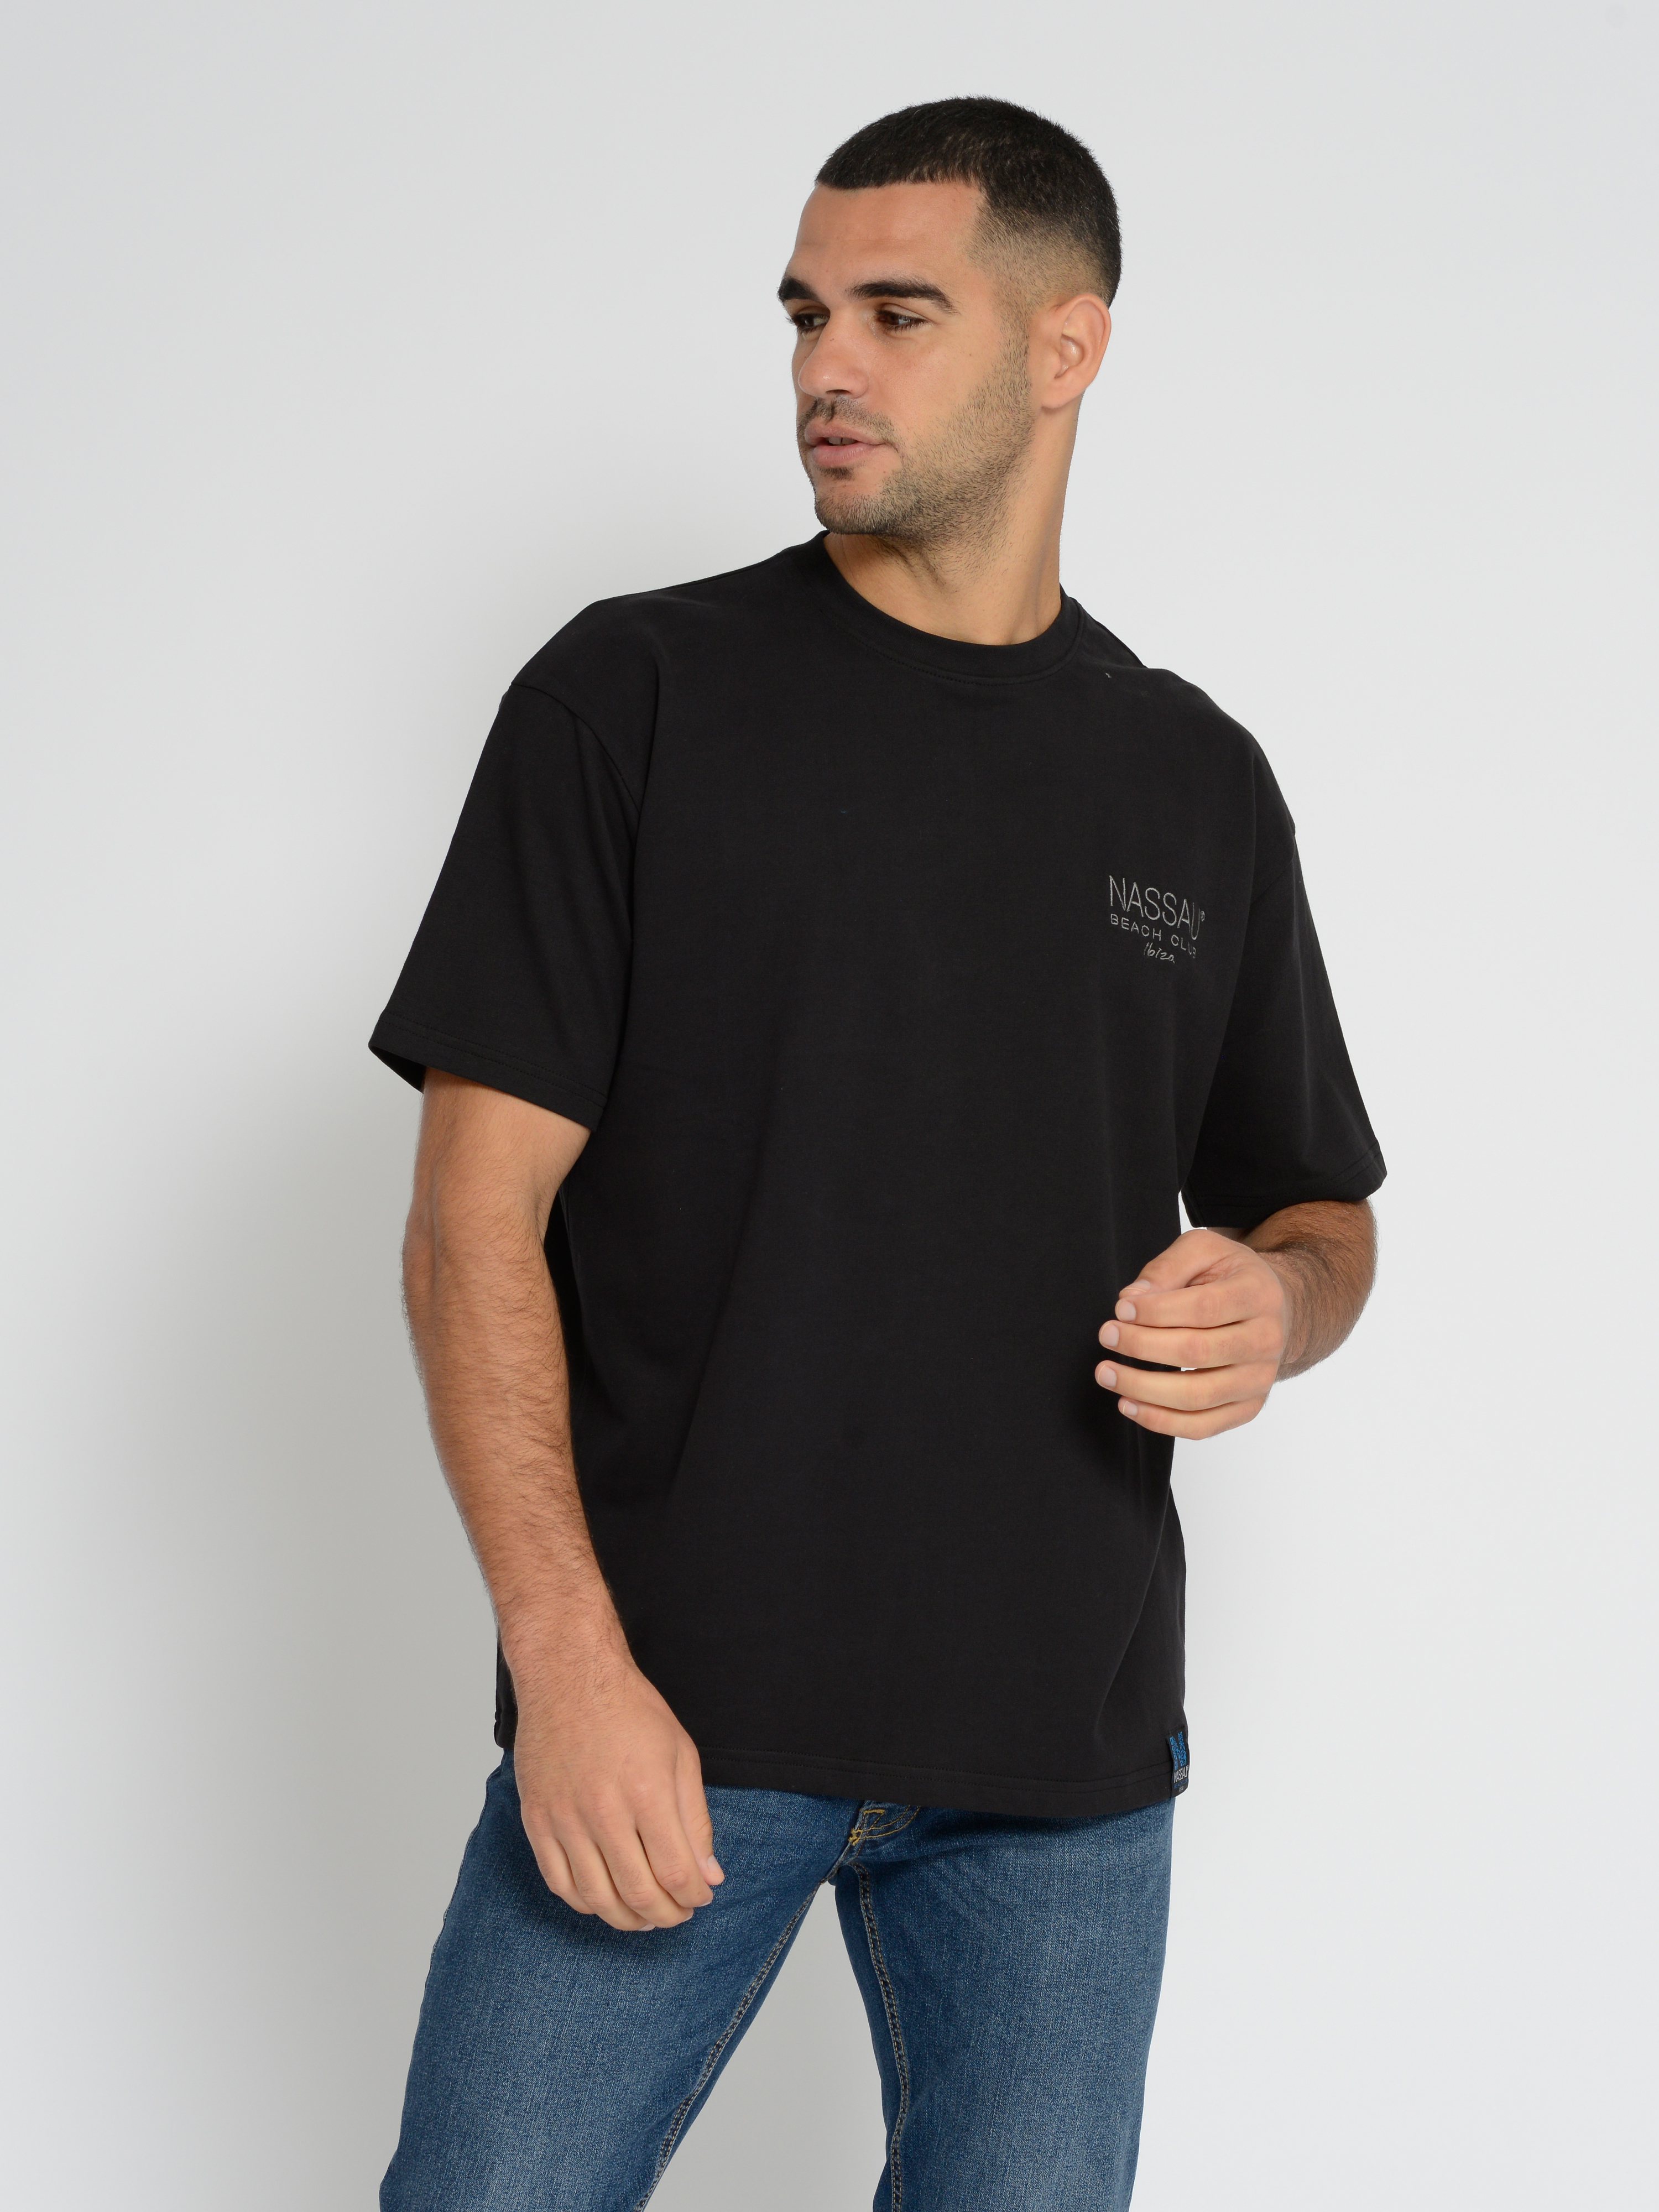  Nassau Beach T-Shirt NB231052 